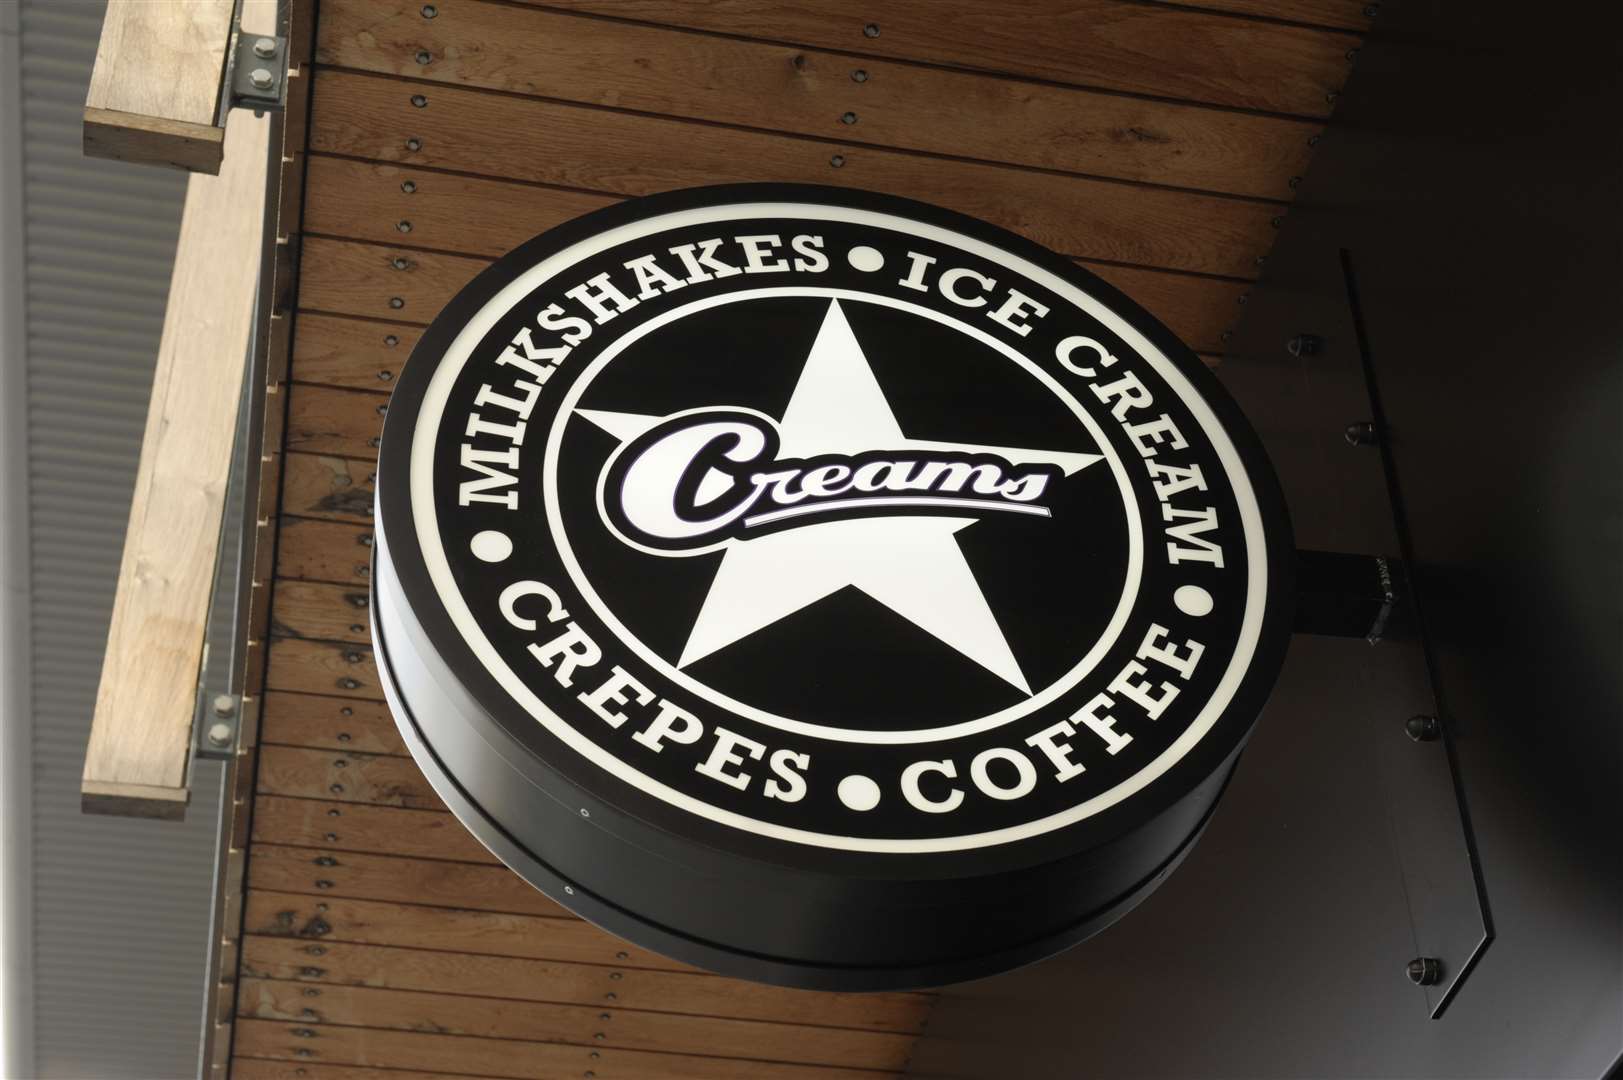 Creams cafe